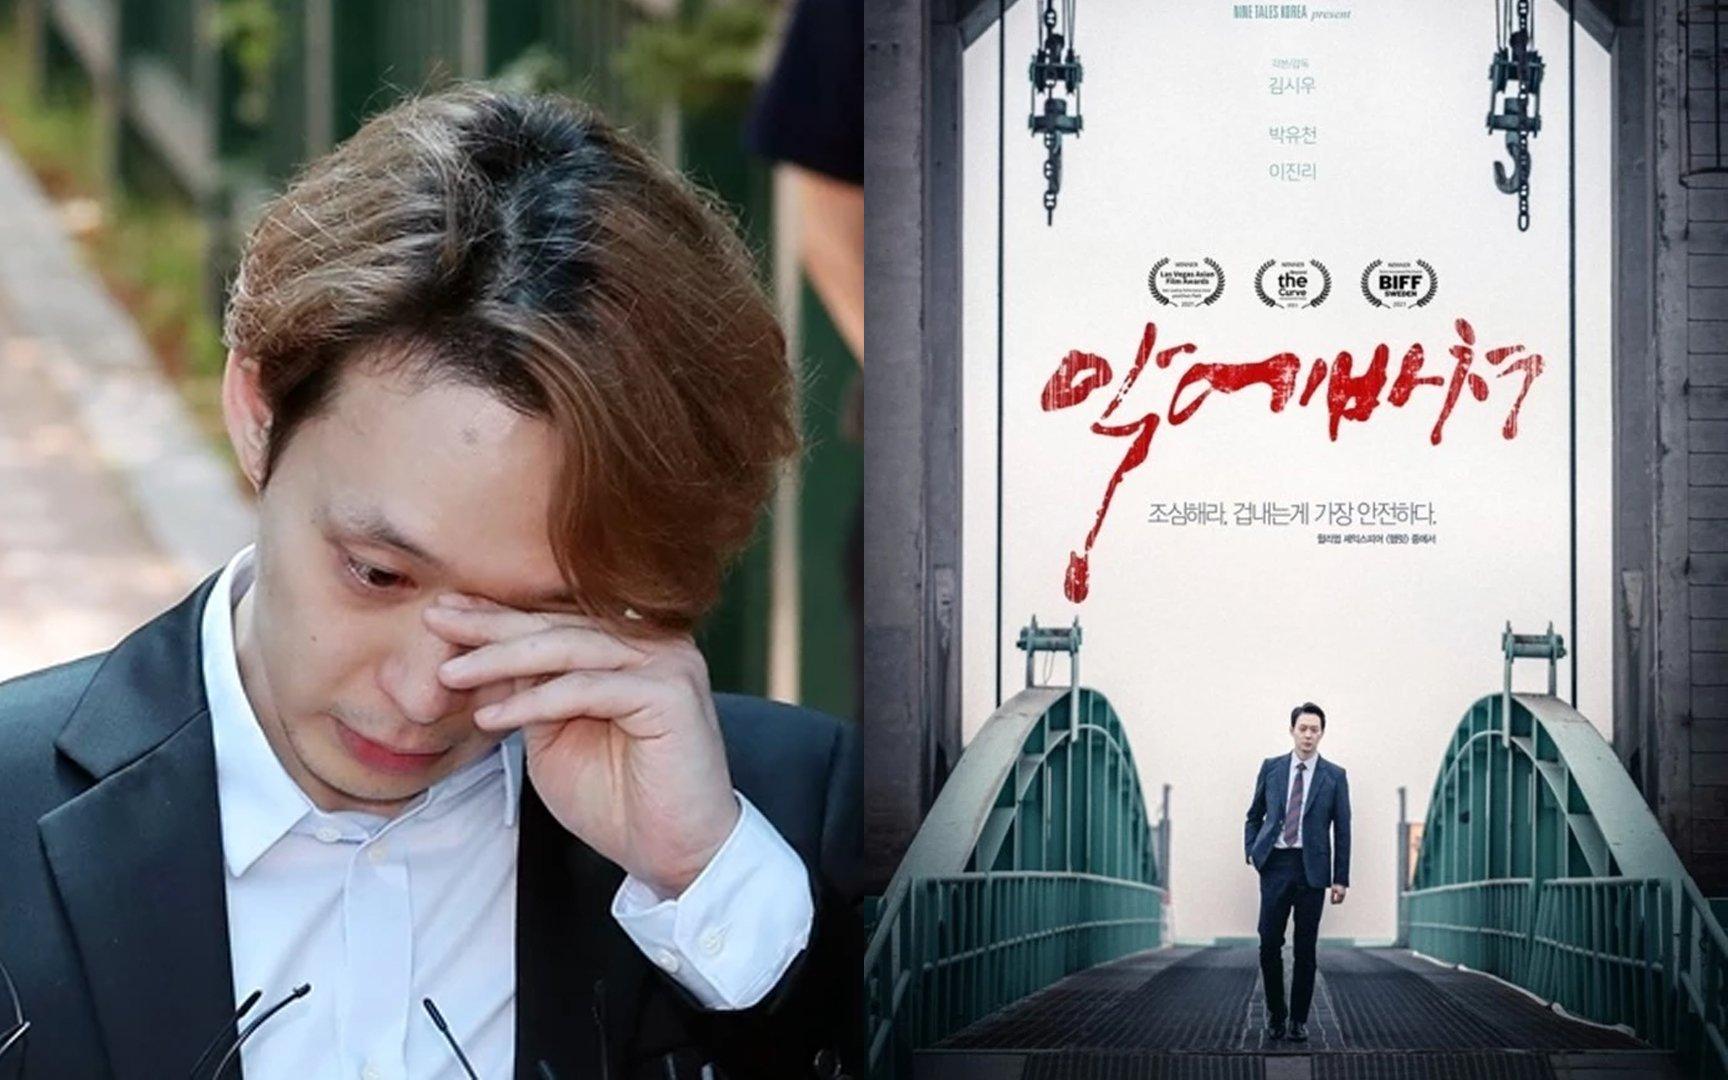 Phim của Park Yoochun bị cấm chiếu rạp. (Ảnh: internet)